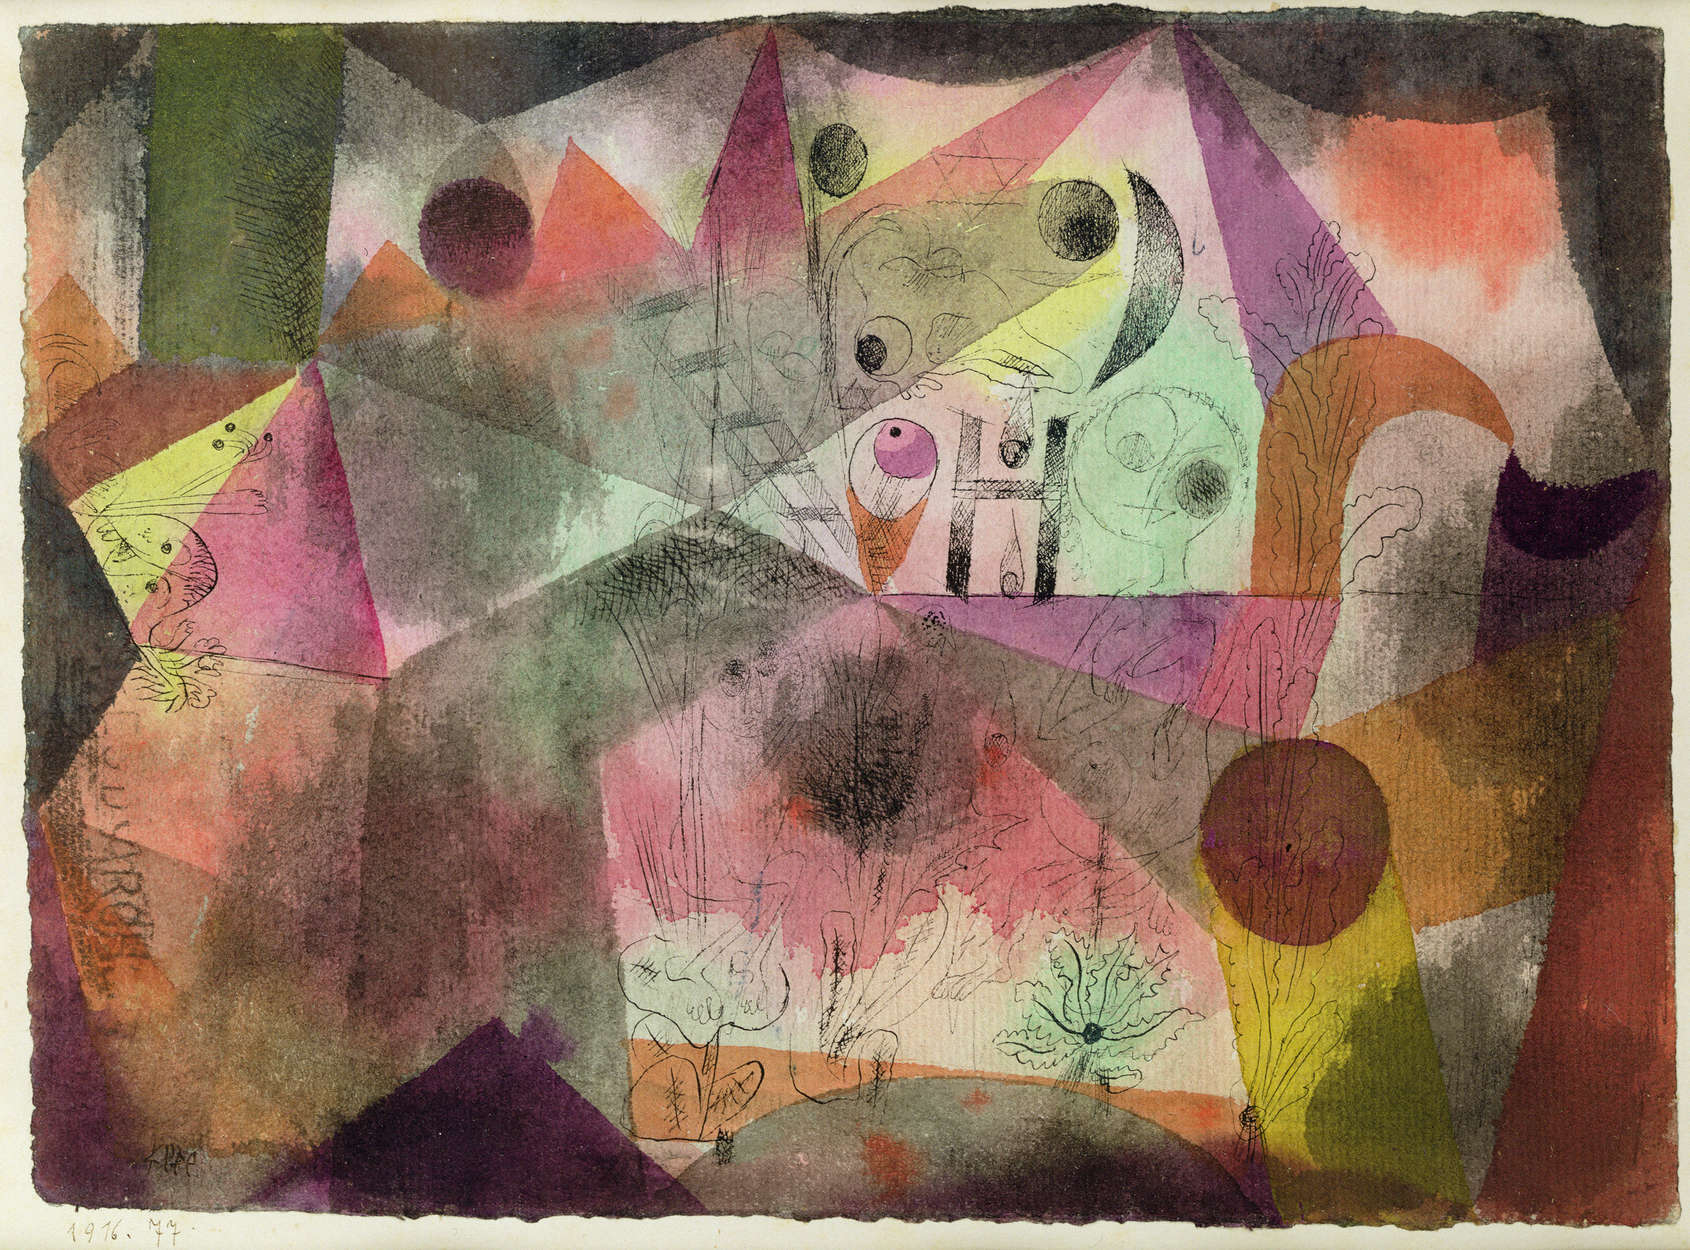             Muurschildering "Met de H" van Paul Klee
        